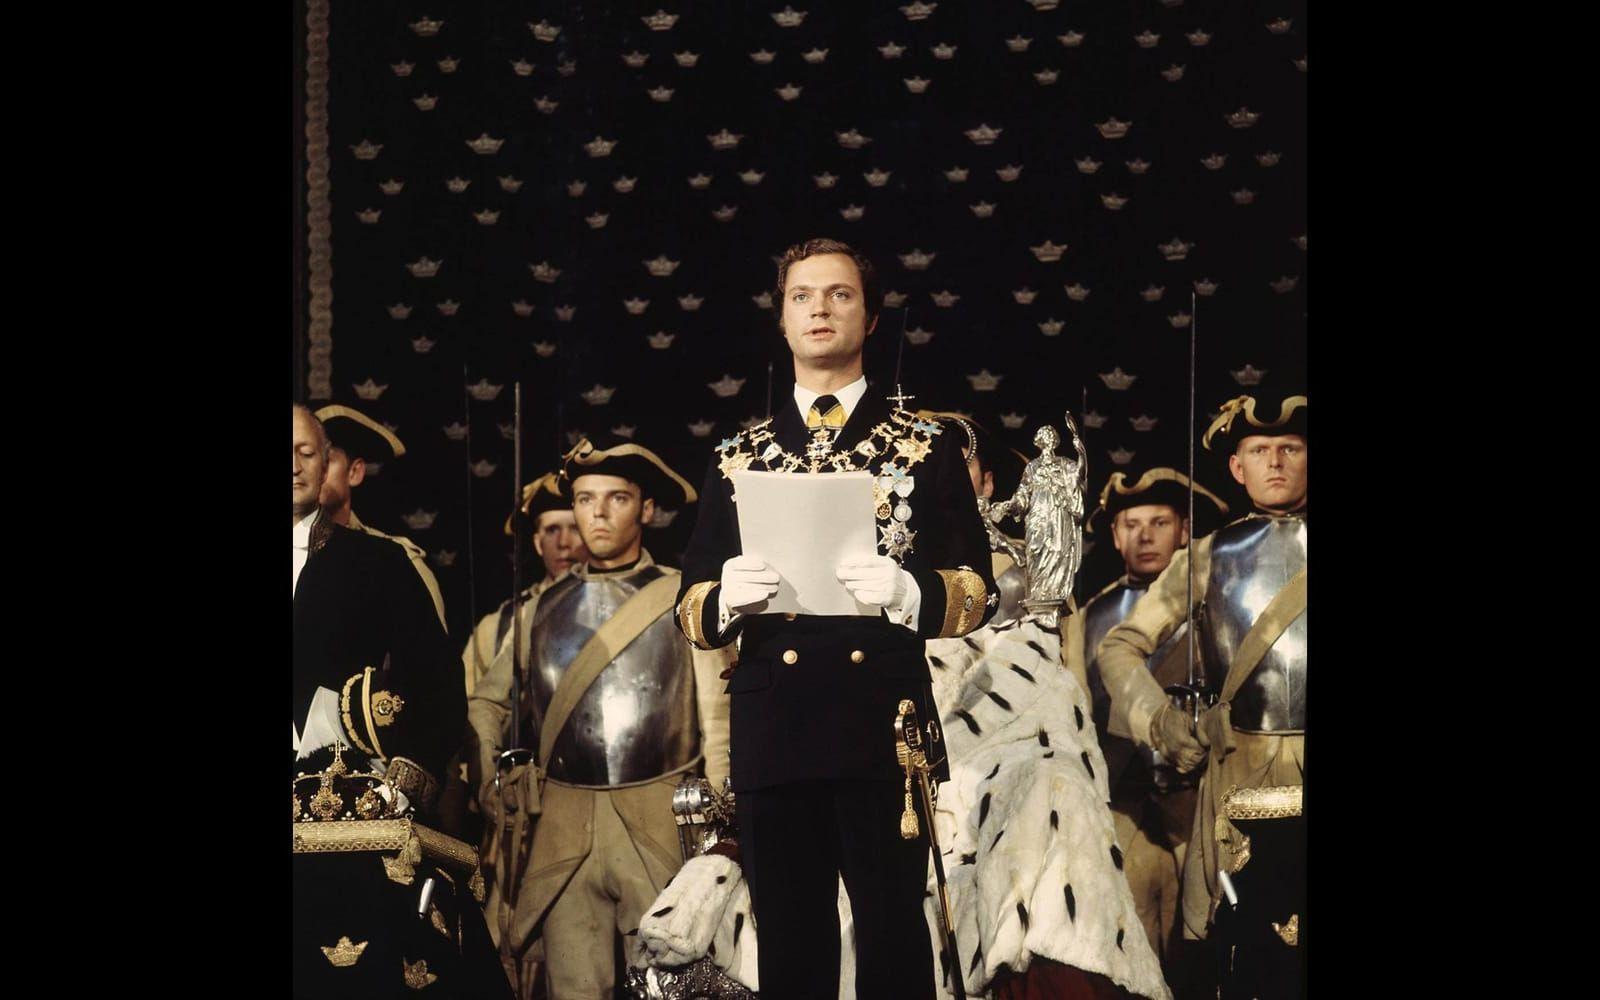 September, 1973: Den 15 september avlider Gustav VI Adolf vilket gör Carl XVI Gustaf till Sveriges kung. Här syns han vid trontillträdet den 19 september 1973 i Rikssalen på Stockholms slott. Hans valspråk blir "För Sverige - I tiden"